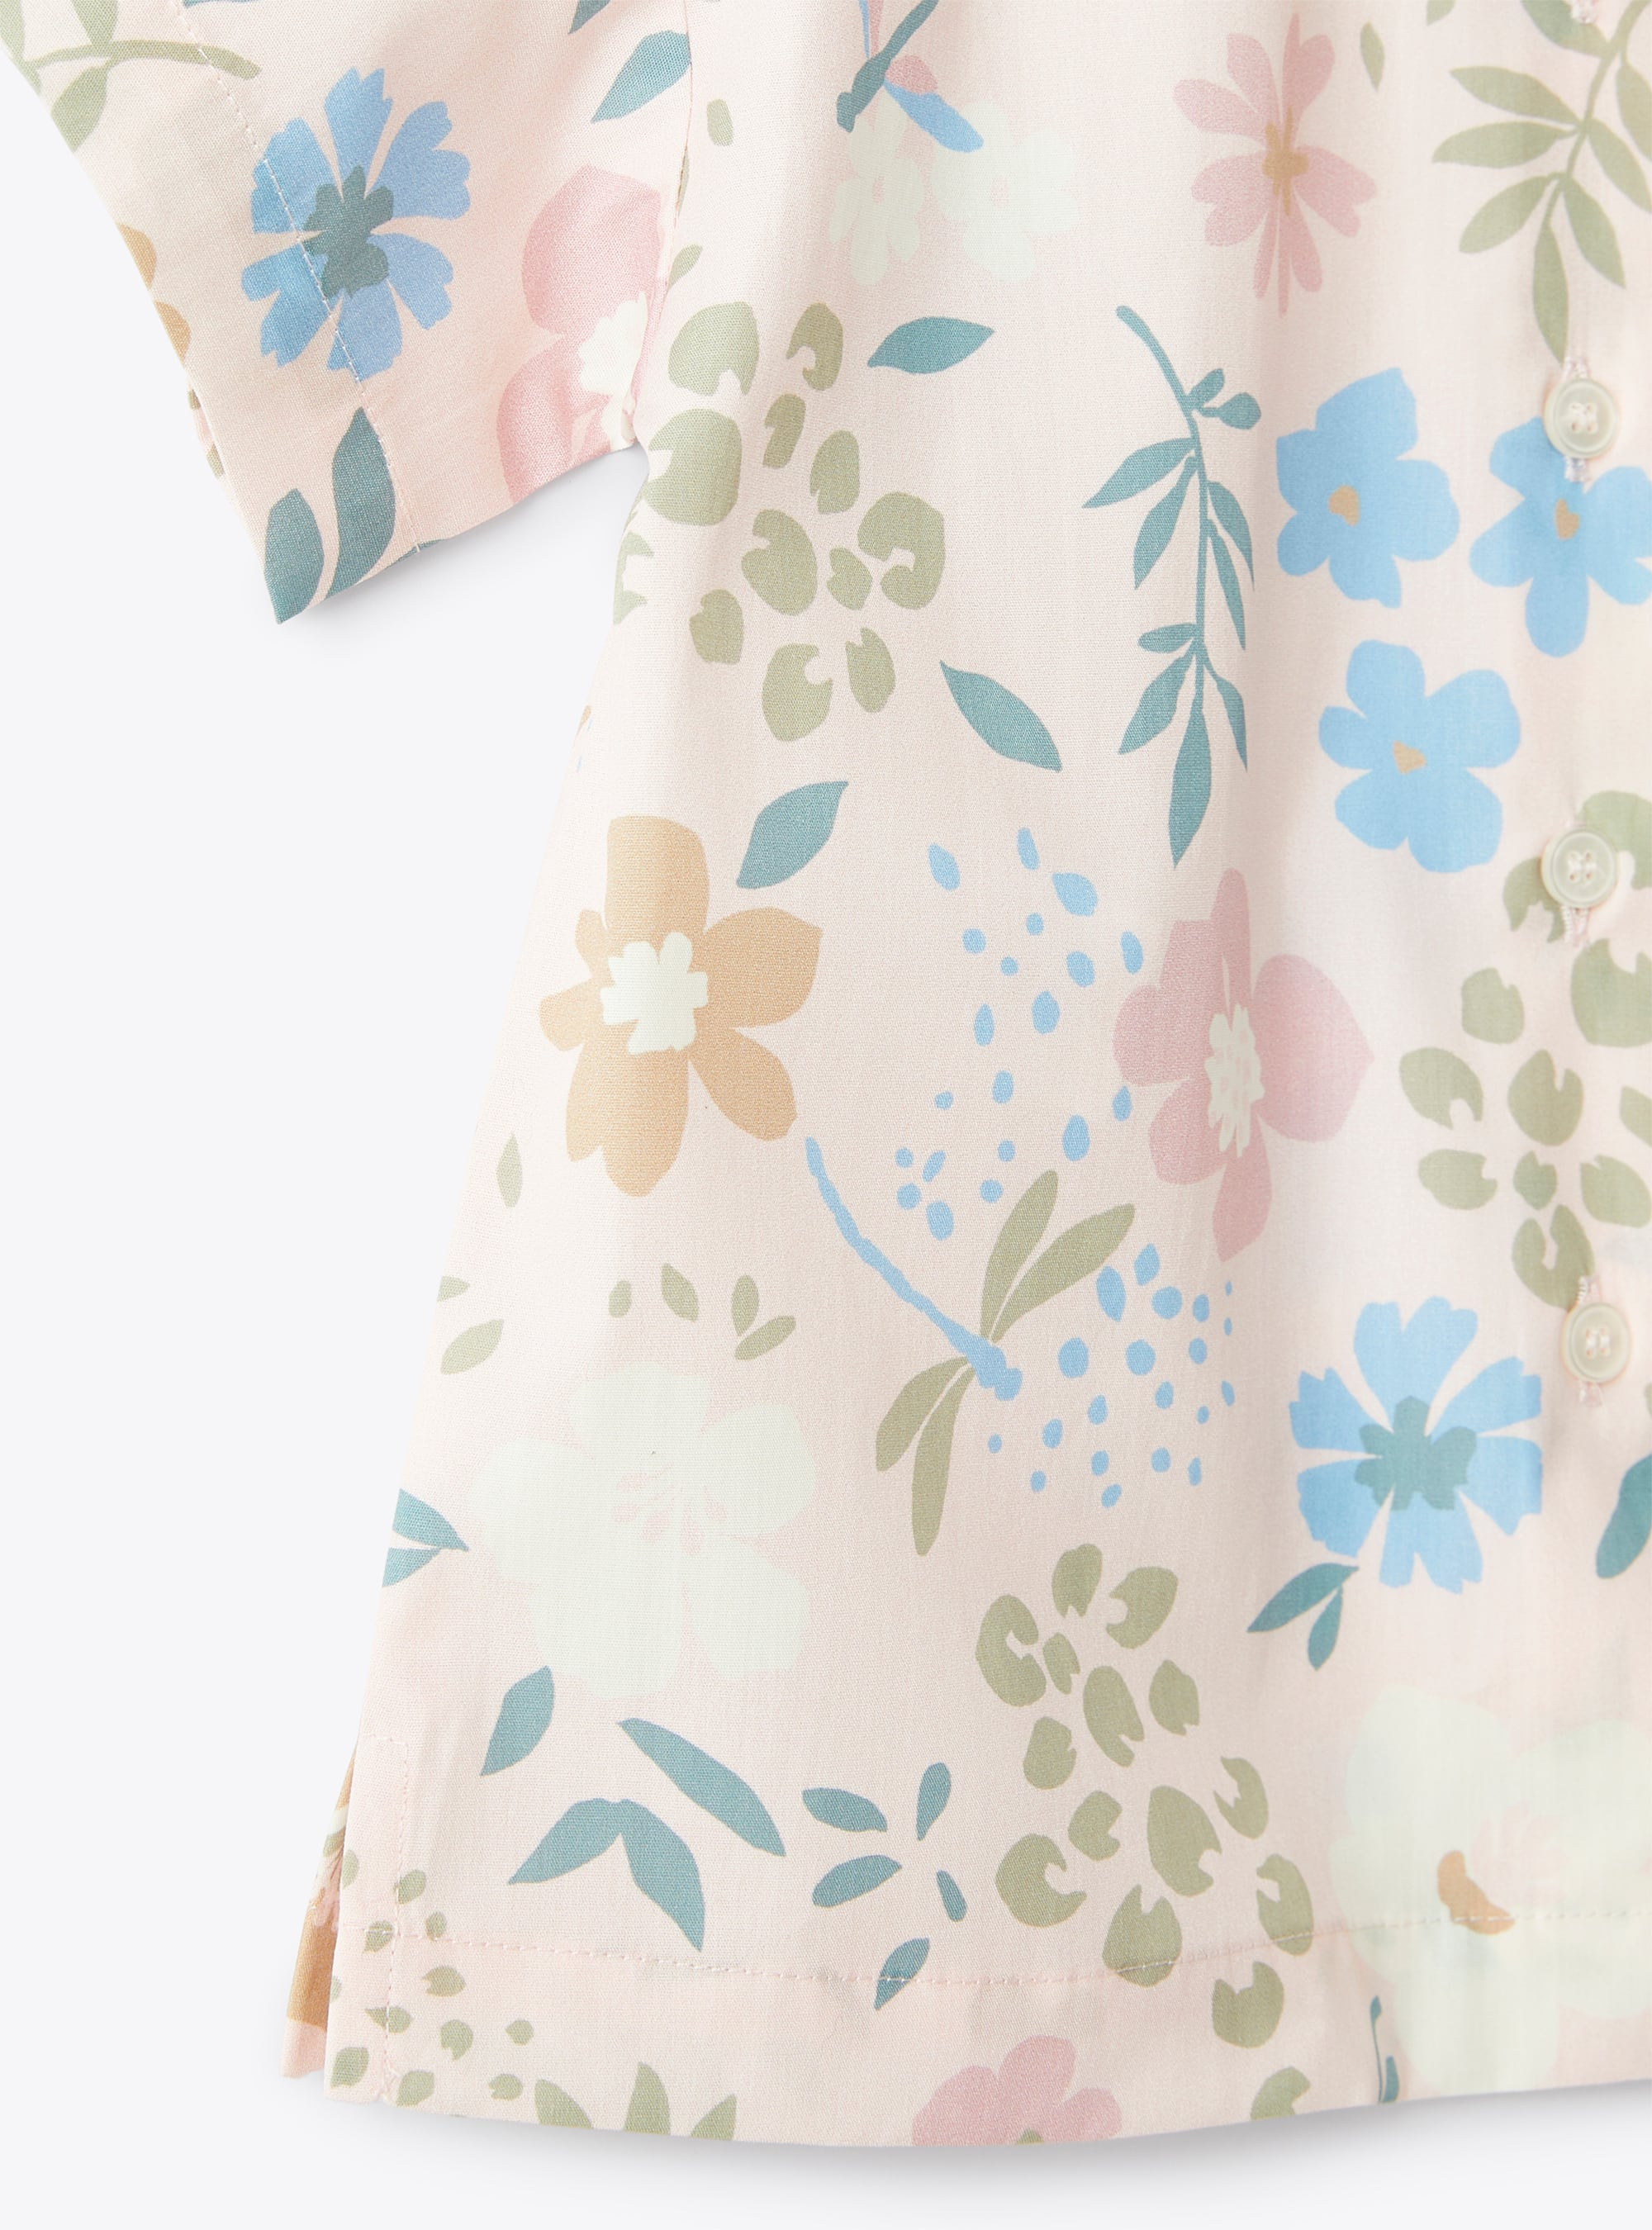 Camicia in cotone stampa libellule rosa - Rosa | Il Gufo